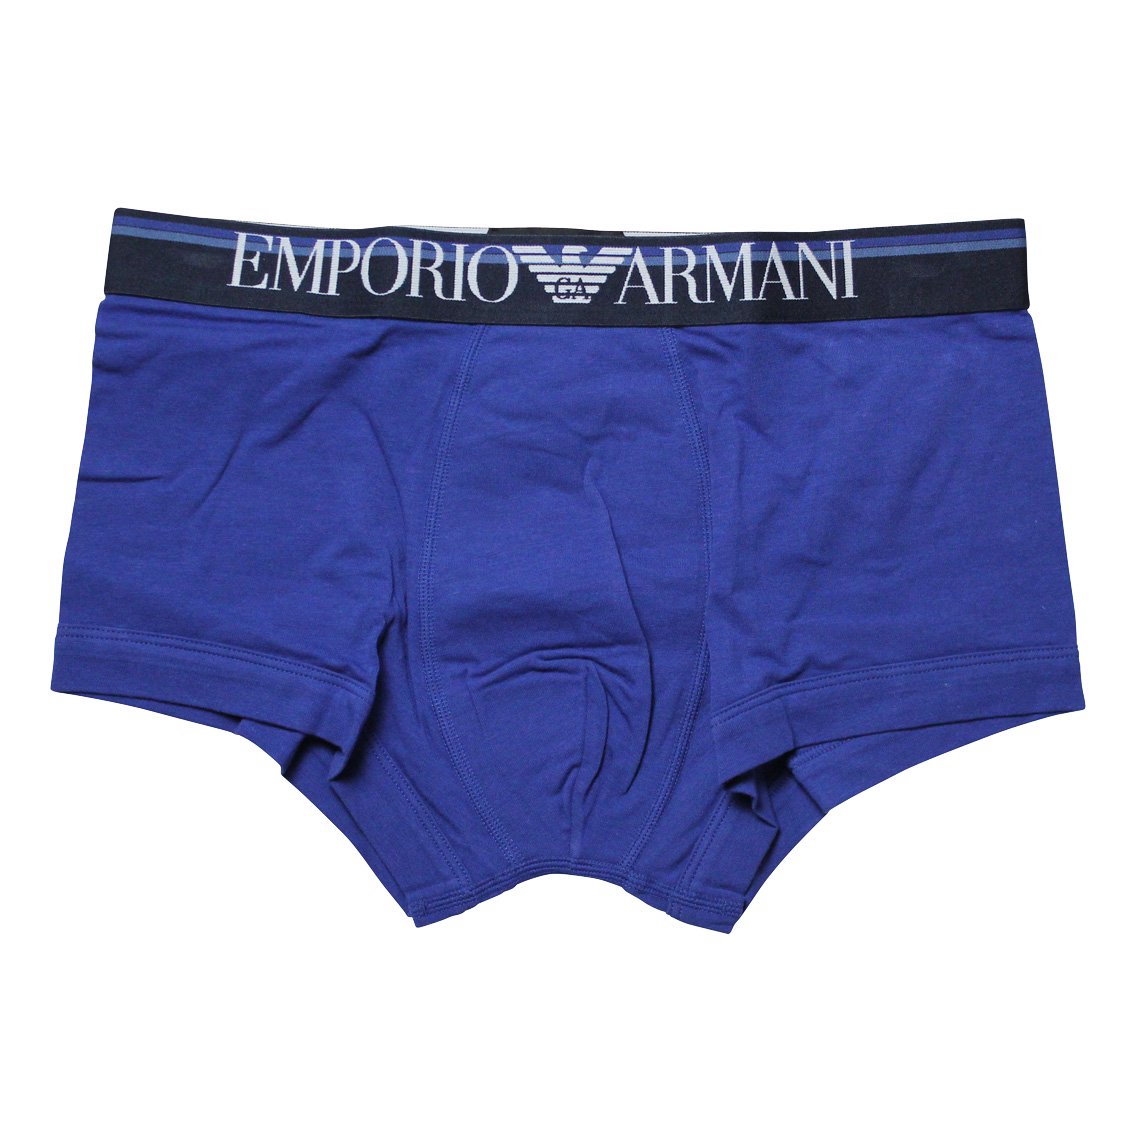 EMPORIO ARMANI(エンポリオ・アルマーニ)[111389-9A510-26433]:ボクサーパンツ,男性下着,インナーの通販